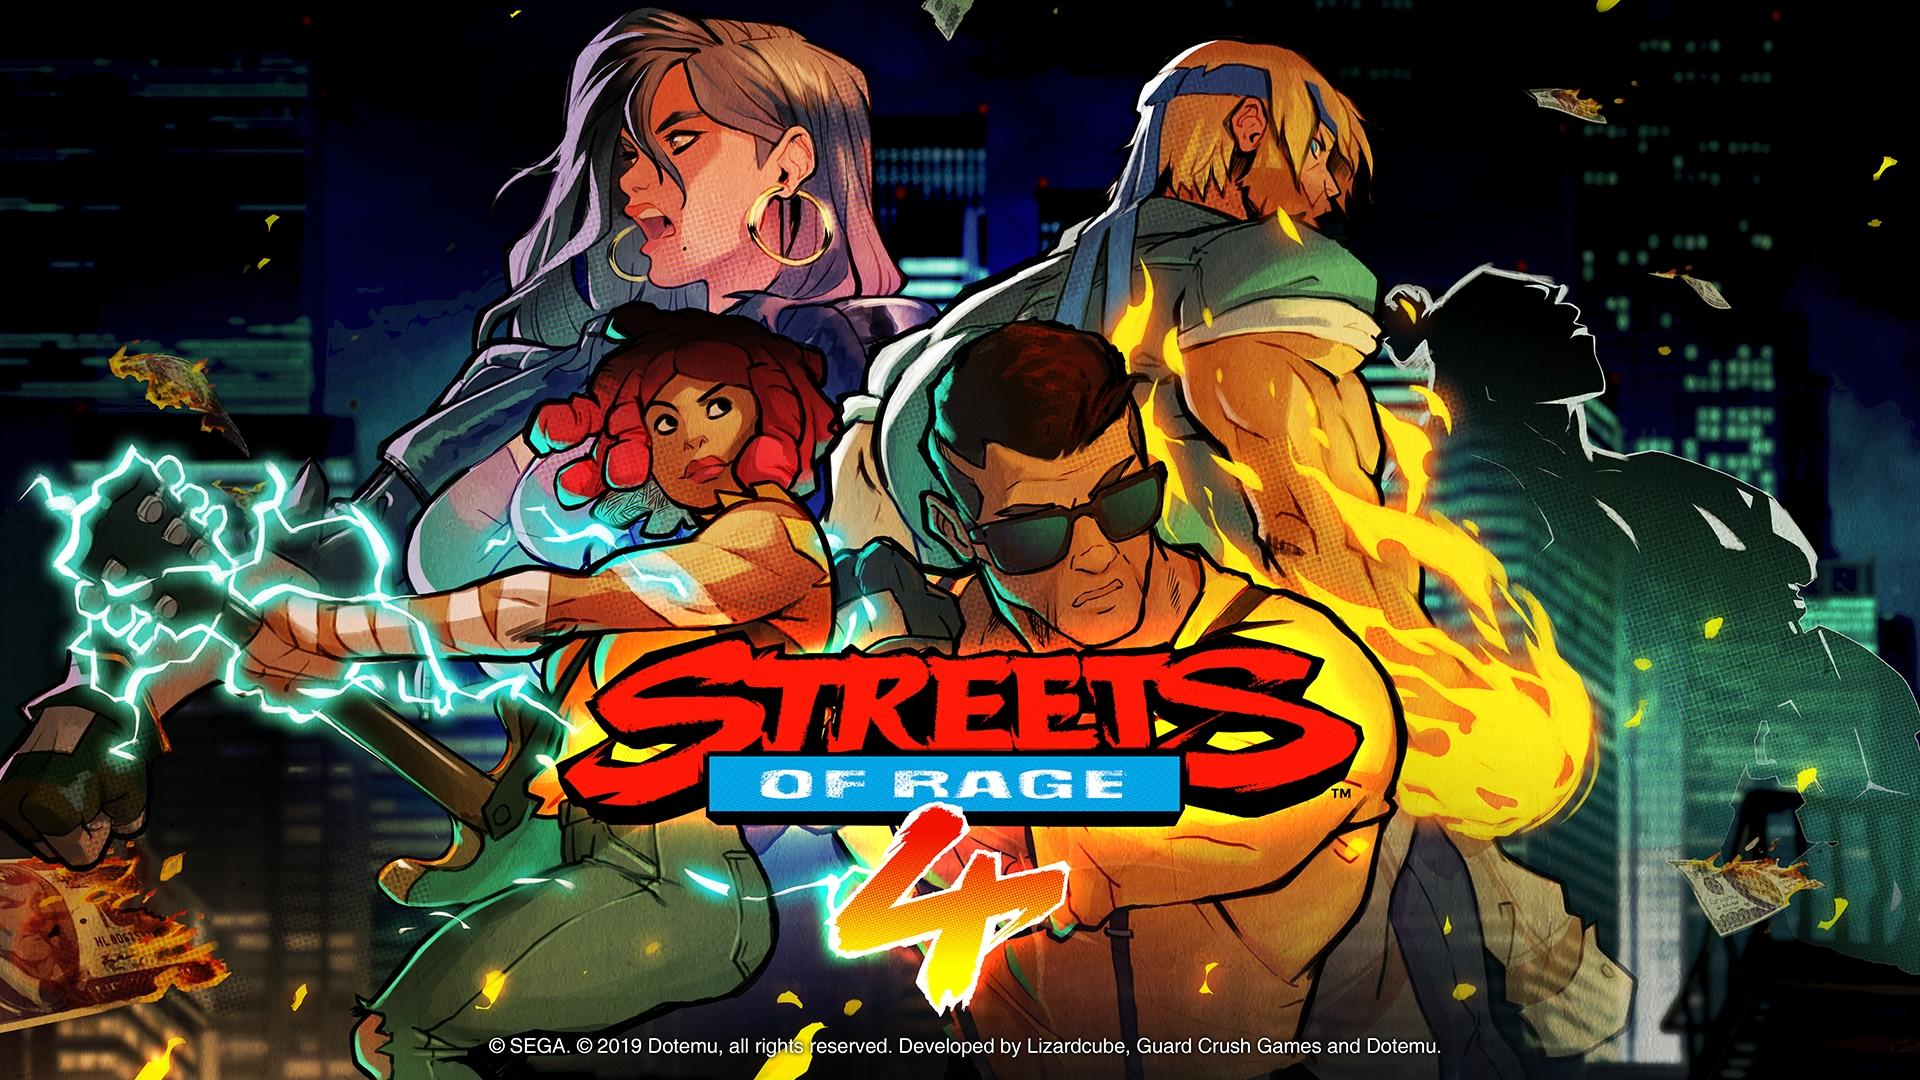 نسخه موبایل بازی Streets of Rage 4 دردسترس قرار گرفت